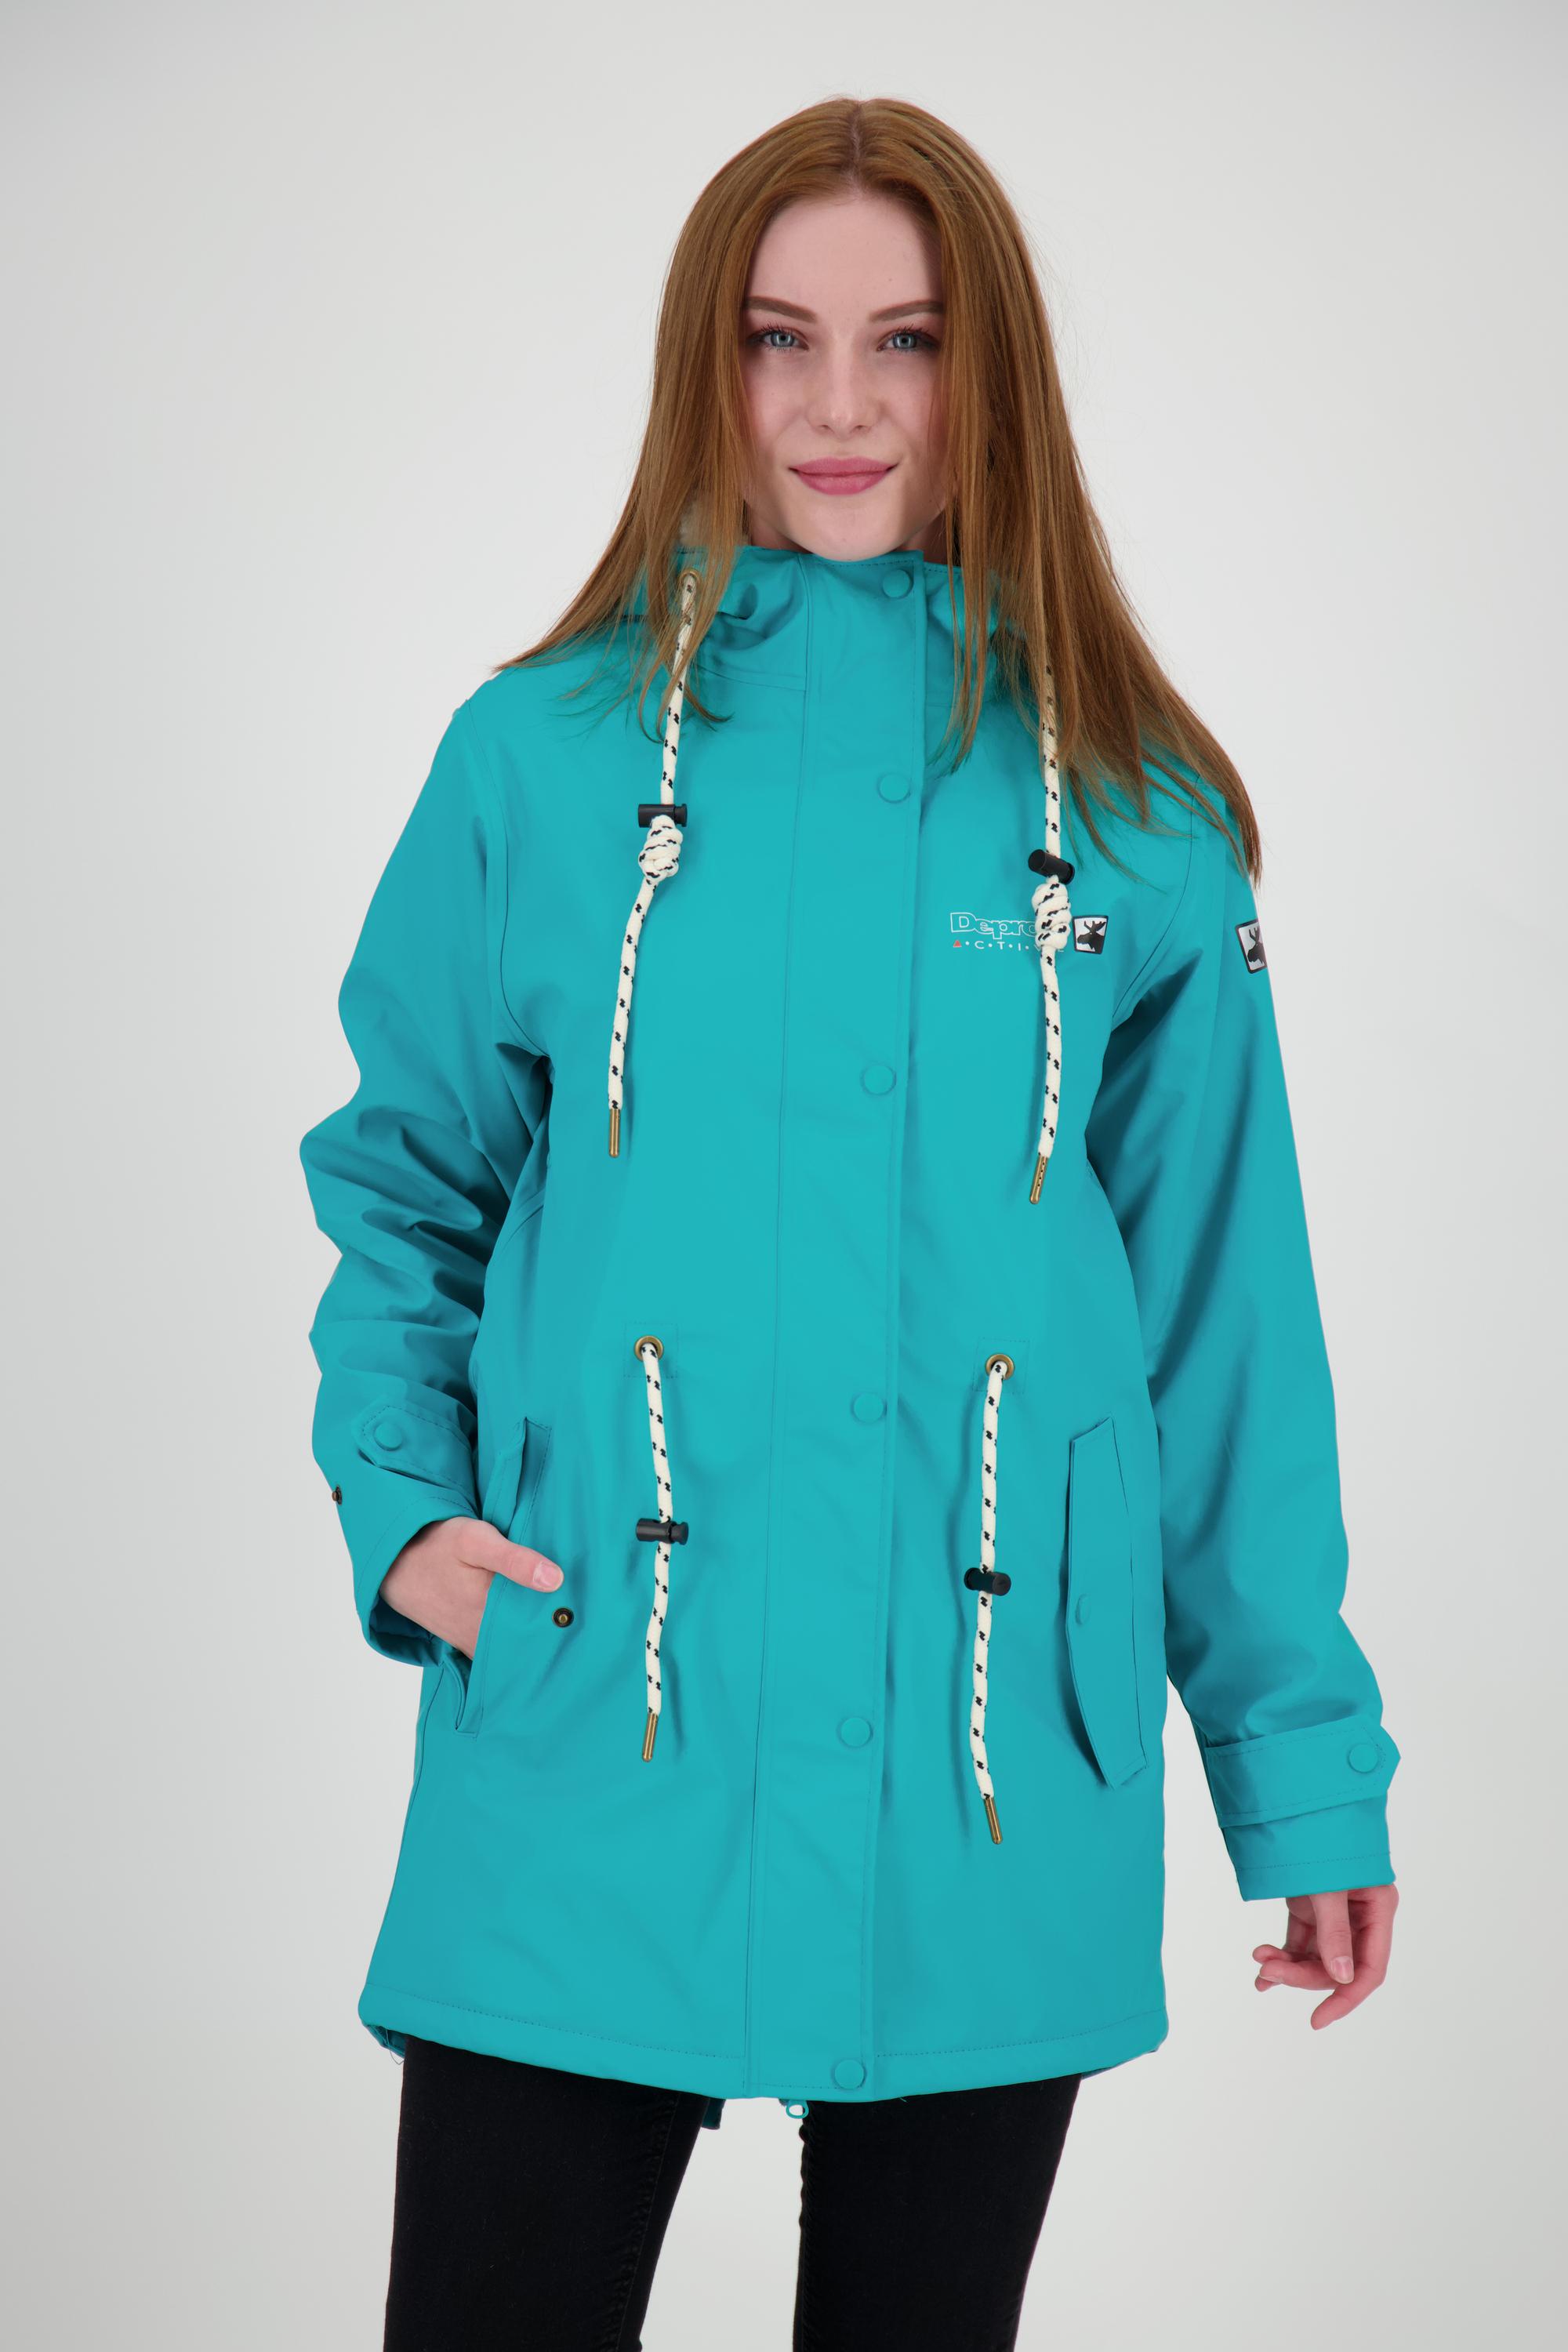 DEPROC active Friesennerz ELLESMERE WOMEN Regenjacke Damen turquoise im  Online Shop von SportScheck kaufen | Windbreakers